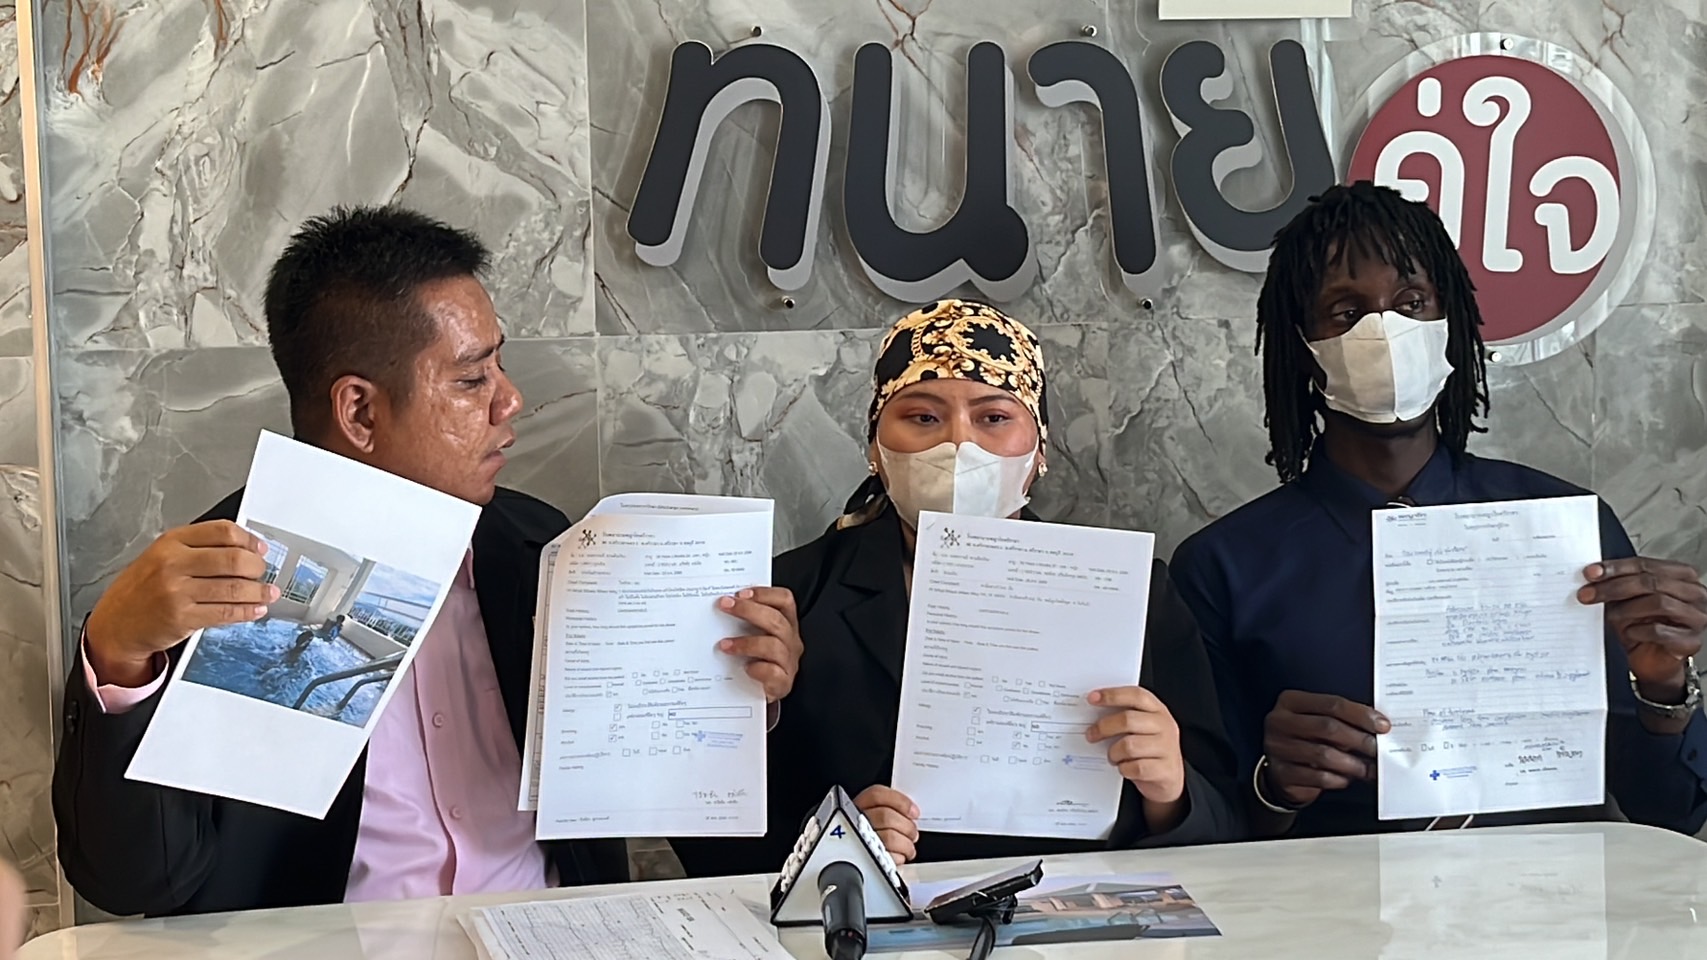 นนทบุรี-สาวไทยพร้อมสามี เข้าร้องทนายหลังพาครอบครัวพักโรงแรมหรูถูกไฟฟ้าดูดในสระว่ายน้ำหวิดดับ